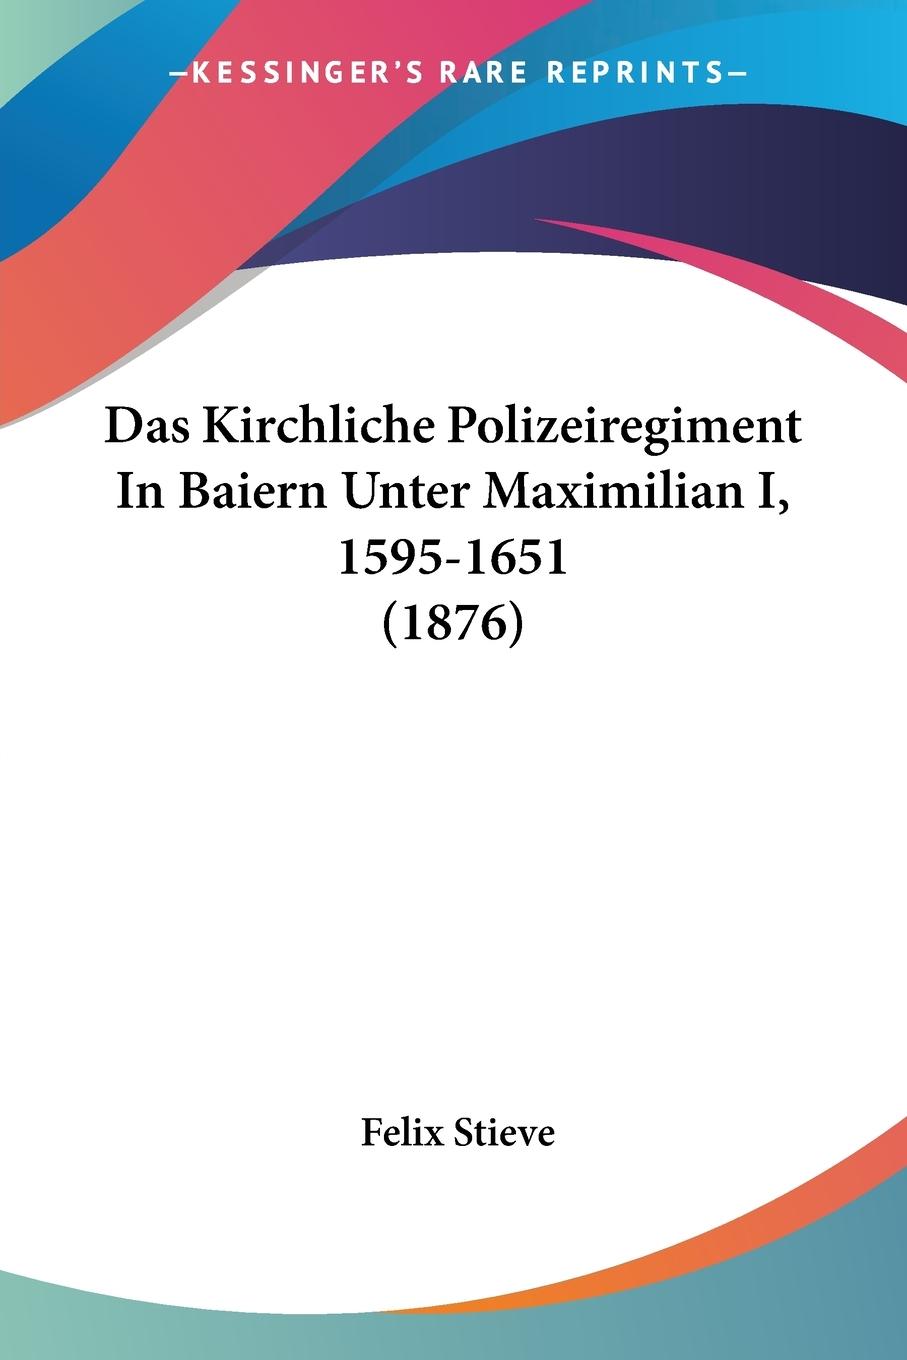 Stieve, F: Kirchliche Polizeiregiment In Baiern Unter Maximi - Stieve, Felix